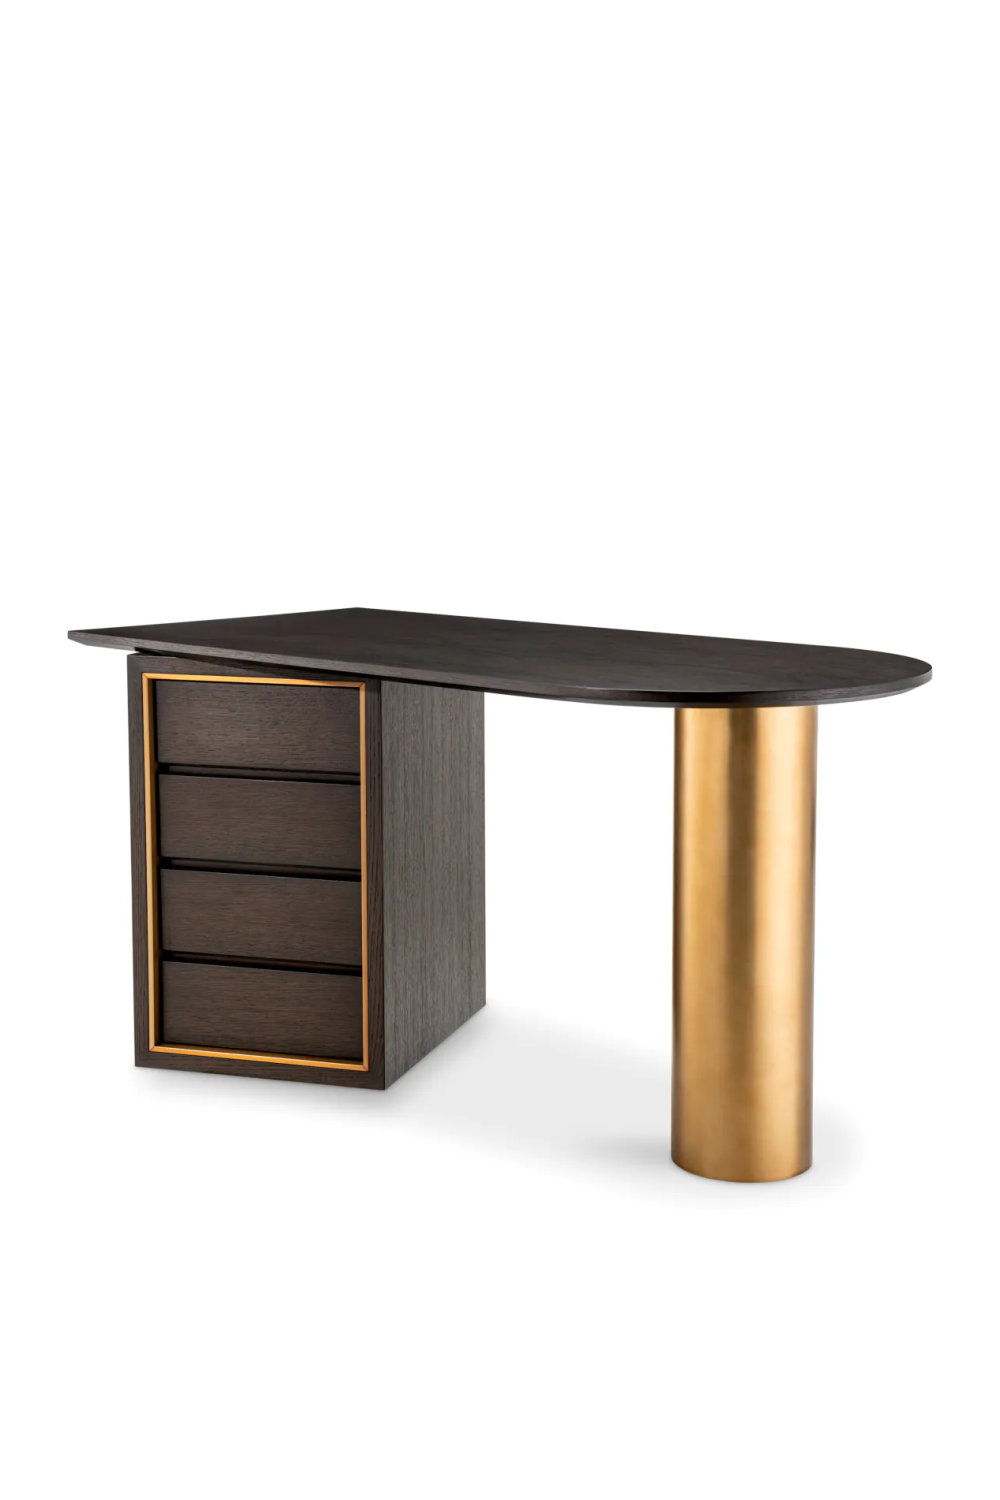 Brown Oak Contemporary Desk | Eichholtz Del Rio | Oroa.com